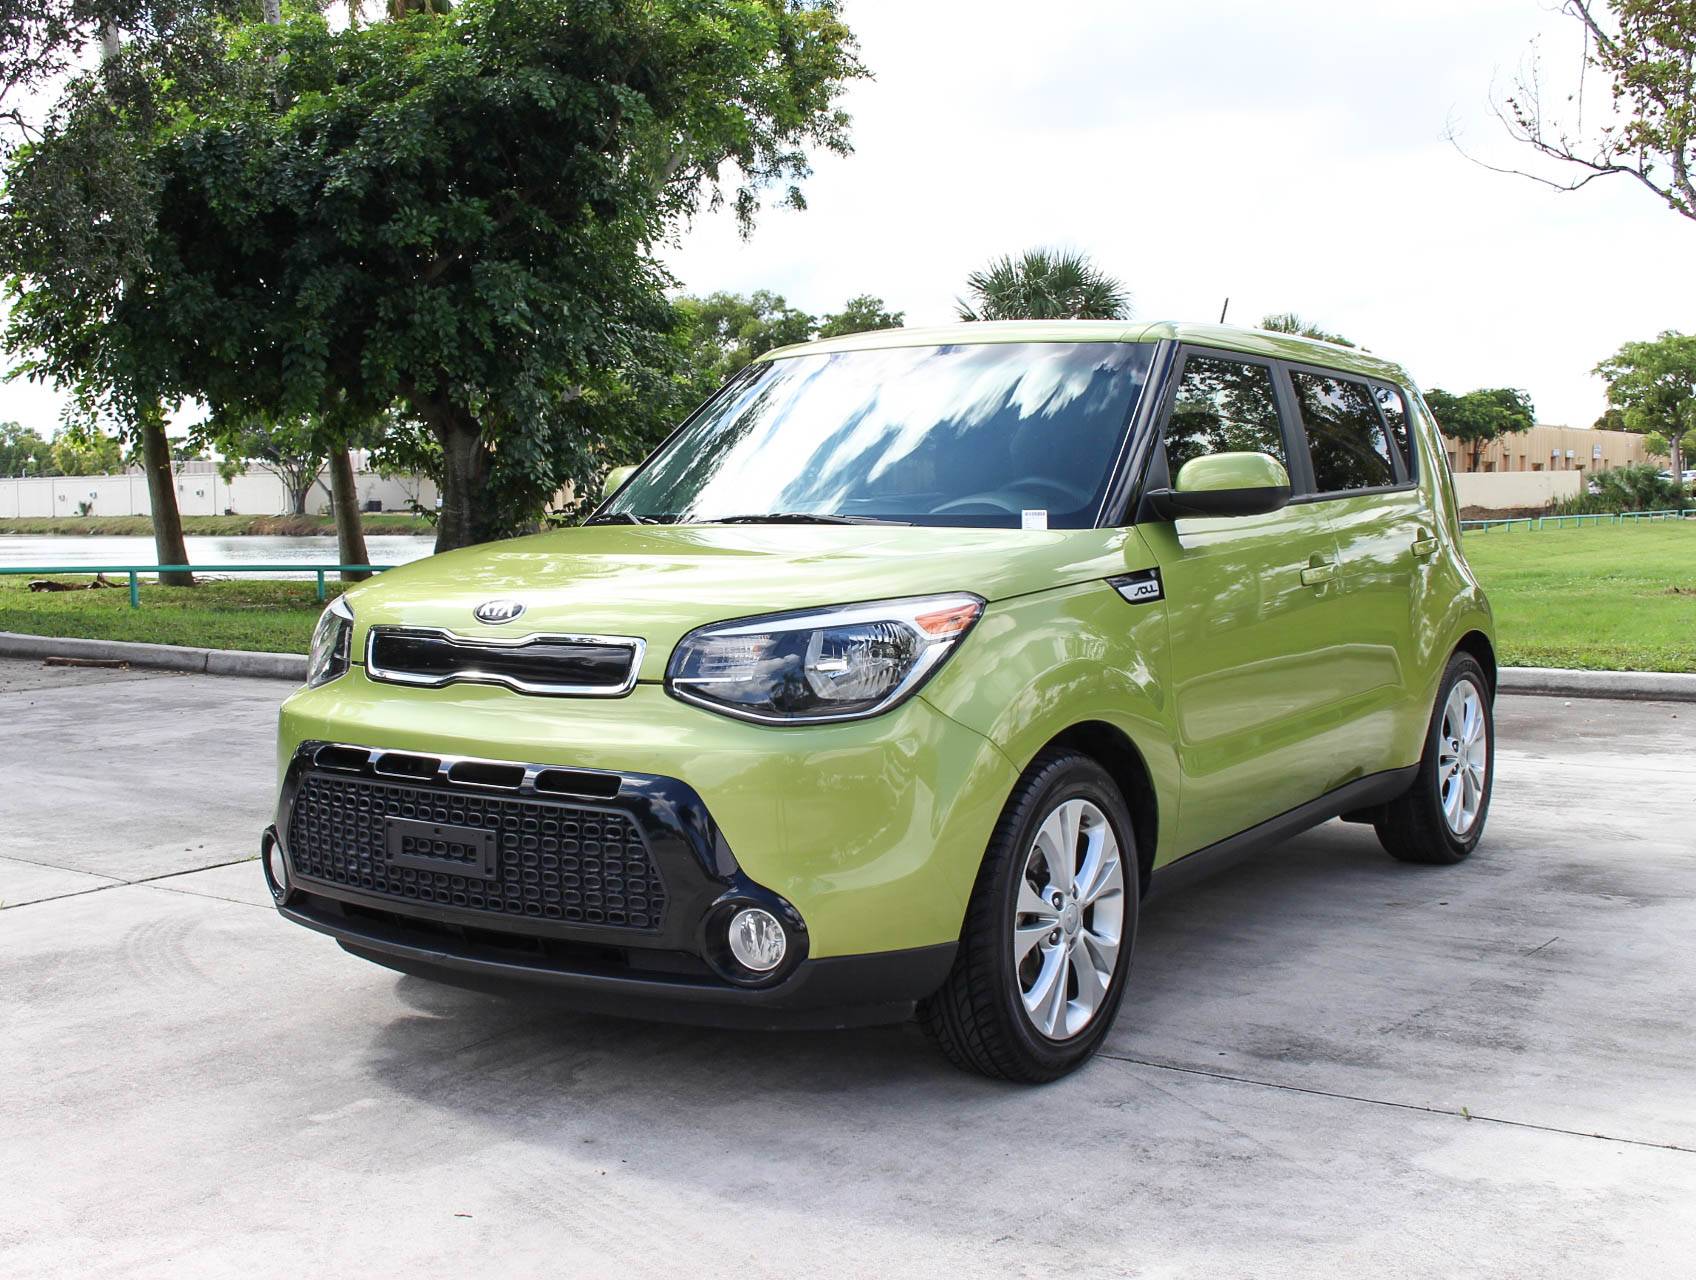 Florida Fine Cars - Used KIA SOUL 2016 MARGATE Plus